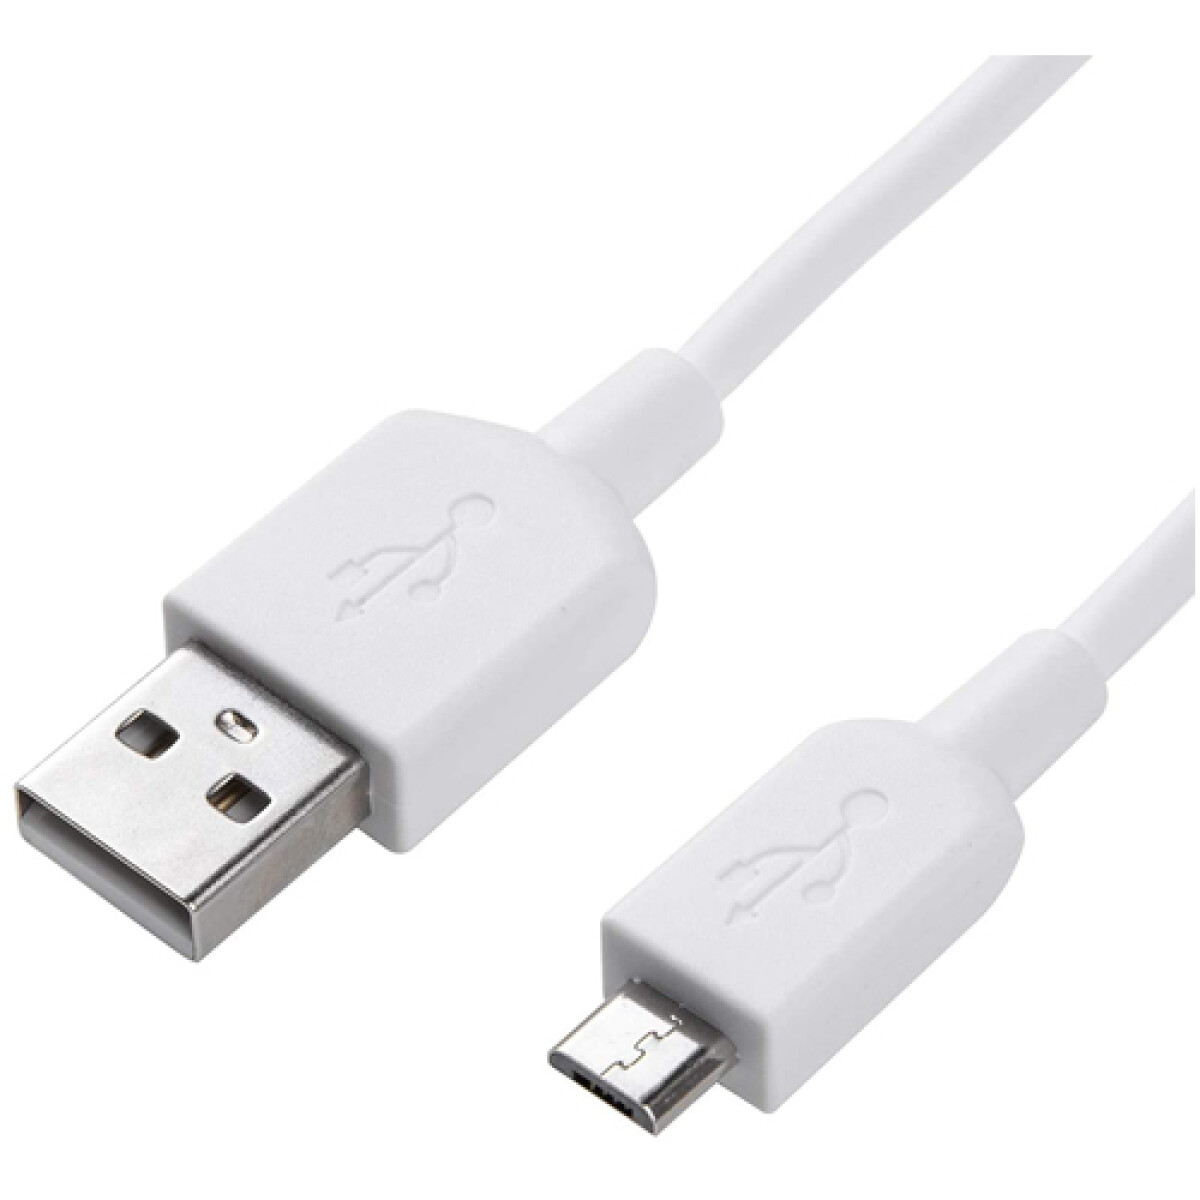 Cable de carga micro USB para carga rapida de 2 m 